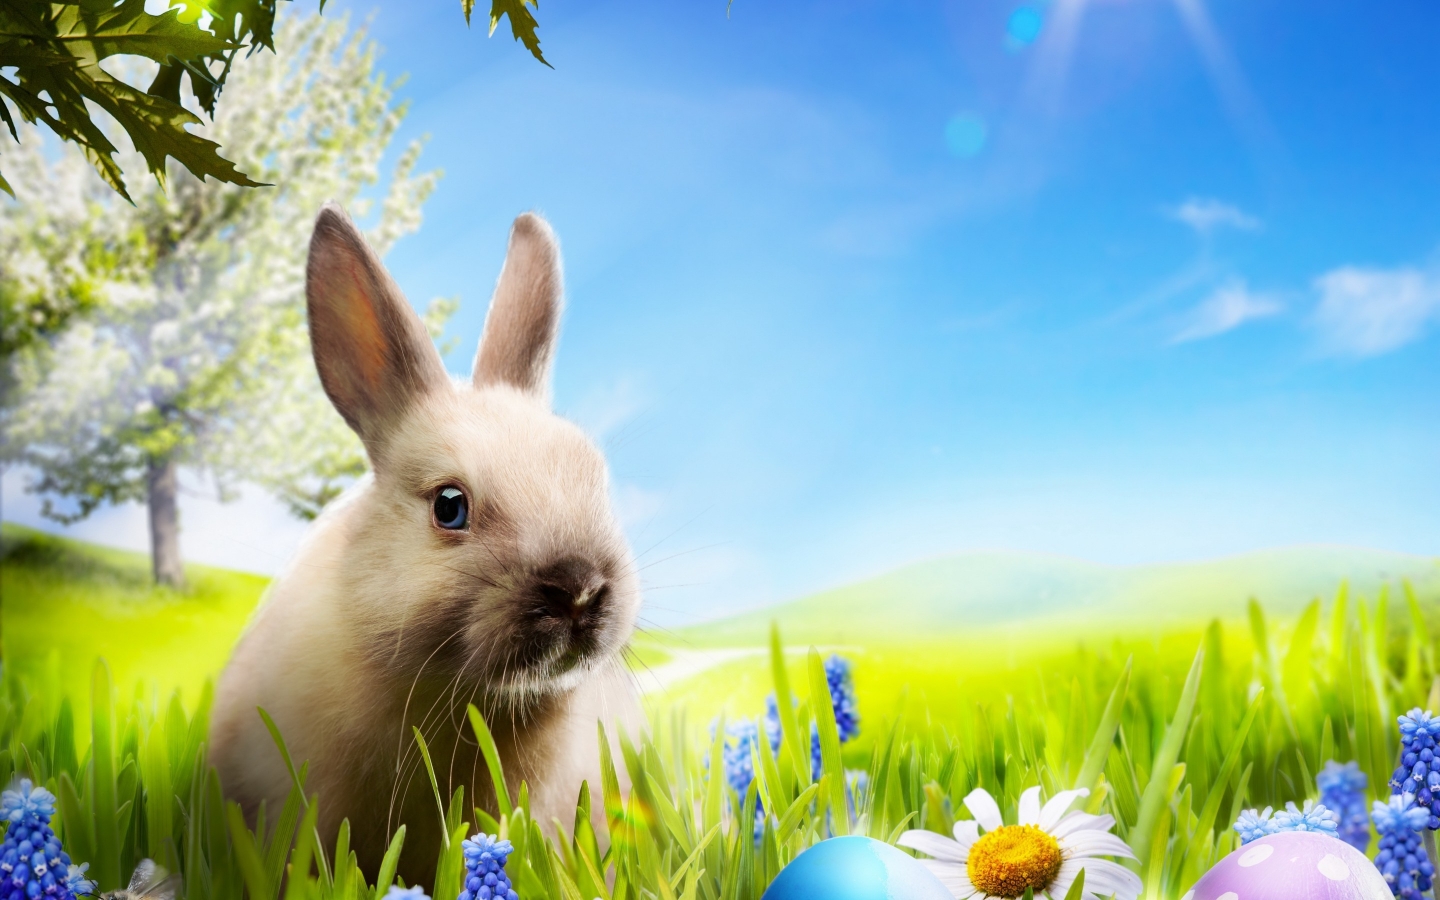 Little Rabbit for 1440 x 900 widescreen resolution